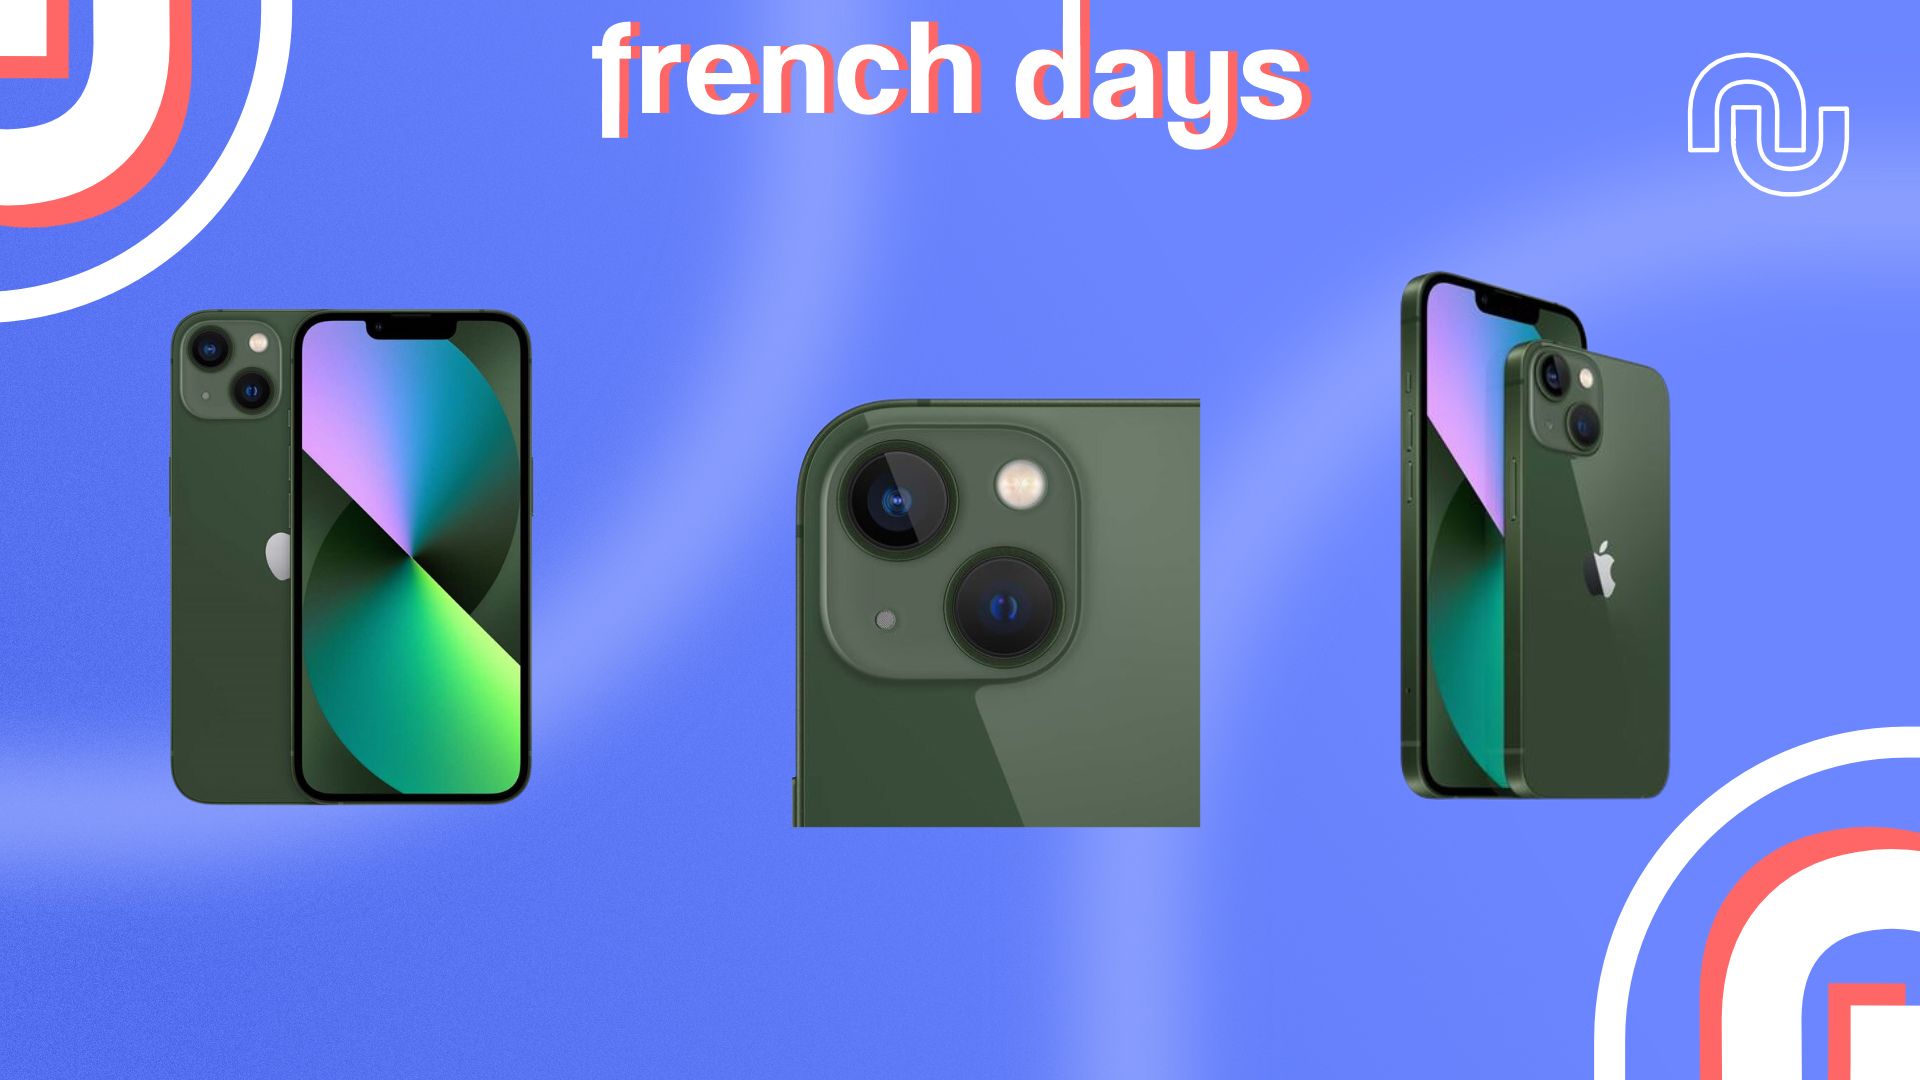 À seulement 15 €, la balance connectée de Xiaomi est encore plus abordable  grâce aux French Days